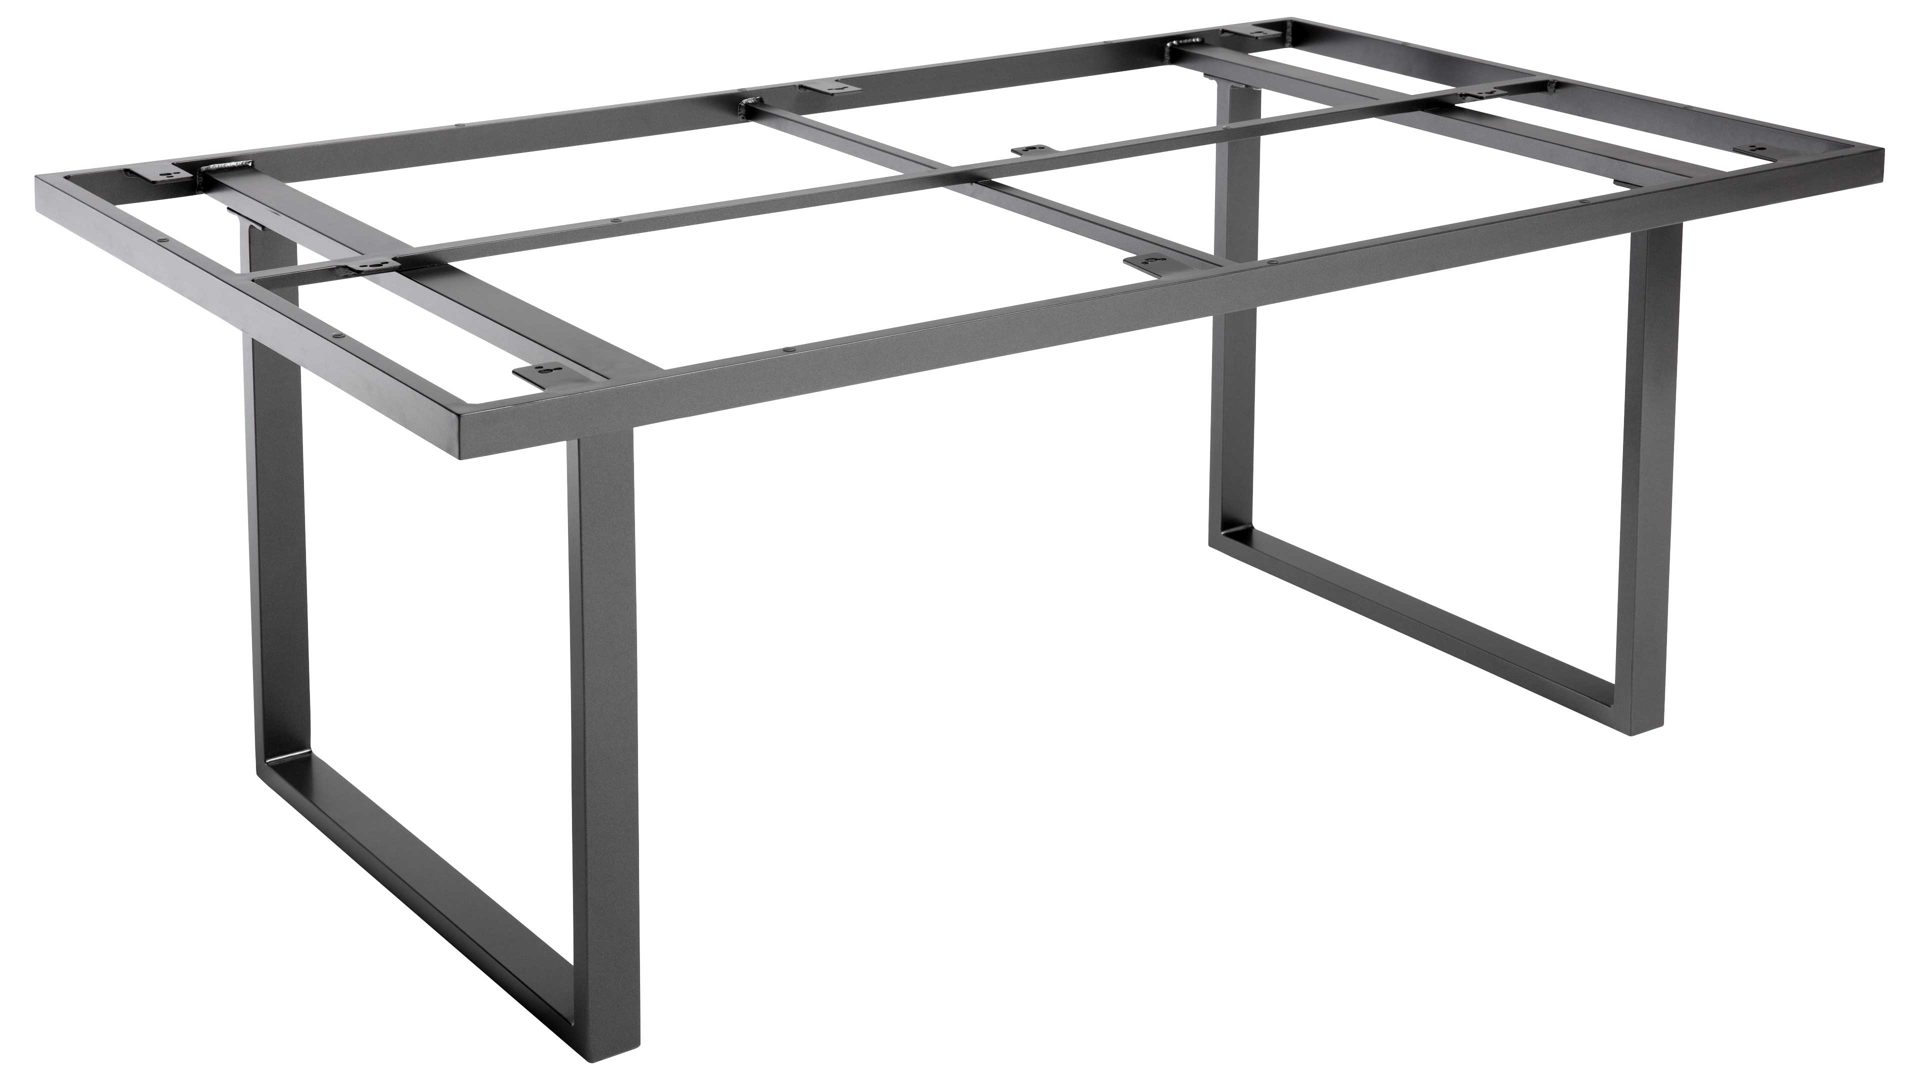 Gartentisch Kettler aus Metall in Anthrazit KETTLER Tischsystem Skate - Tischgestell anthrazitfarbenes Aluminium - ca. 159 x 91 cm